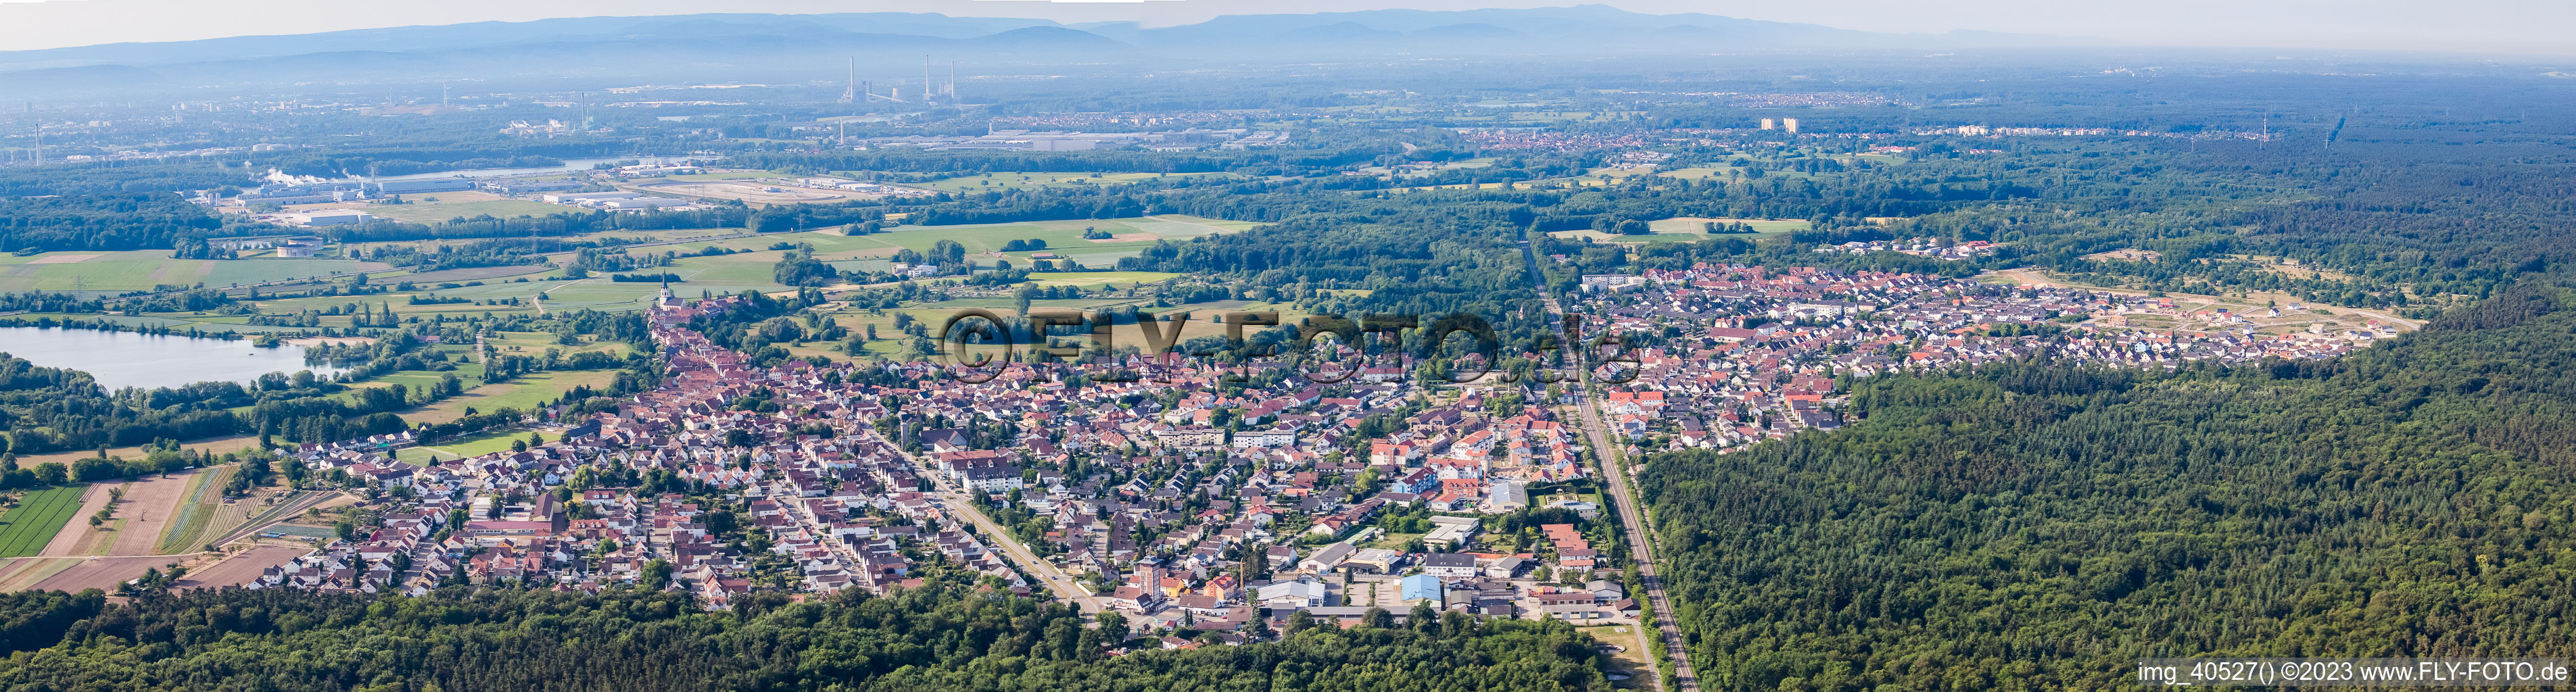 Luftbild von Panorama in Jockgrim im Bundesland Rheinland-Pfalz, Deutschland